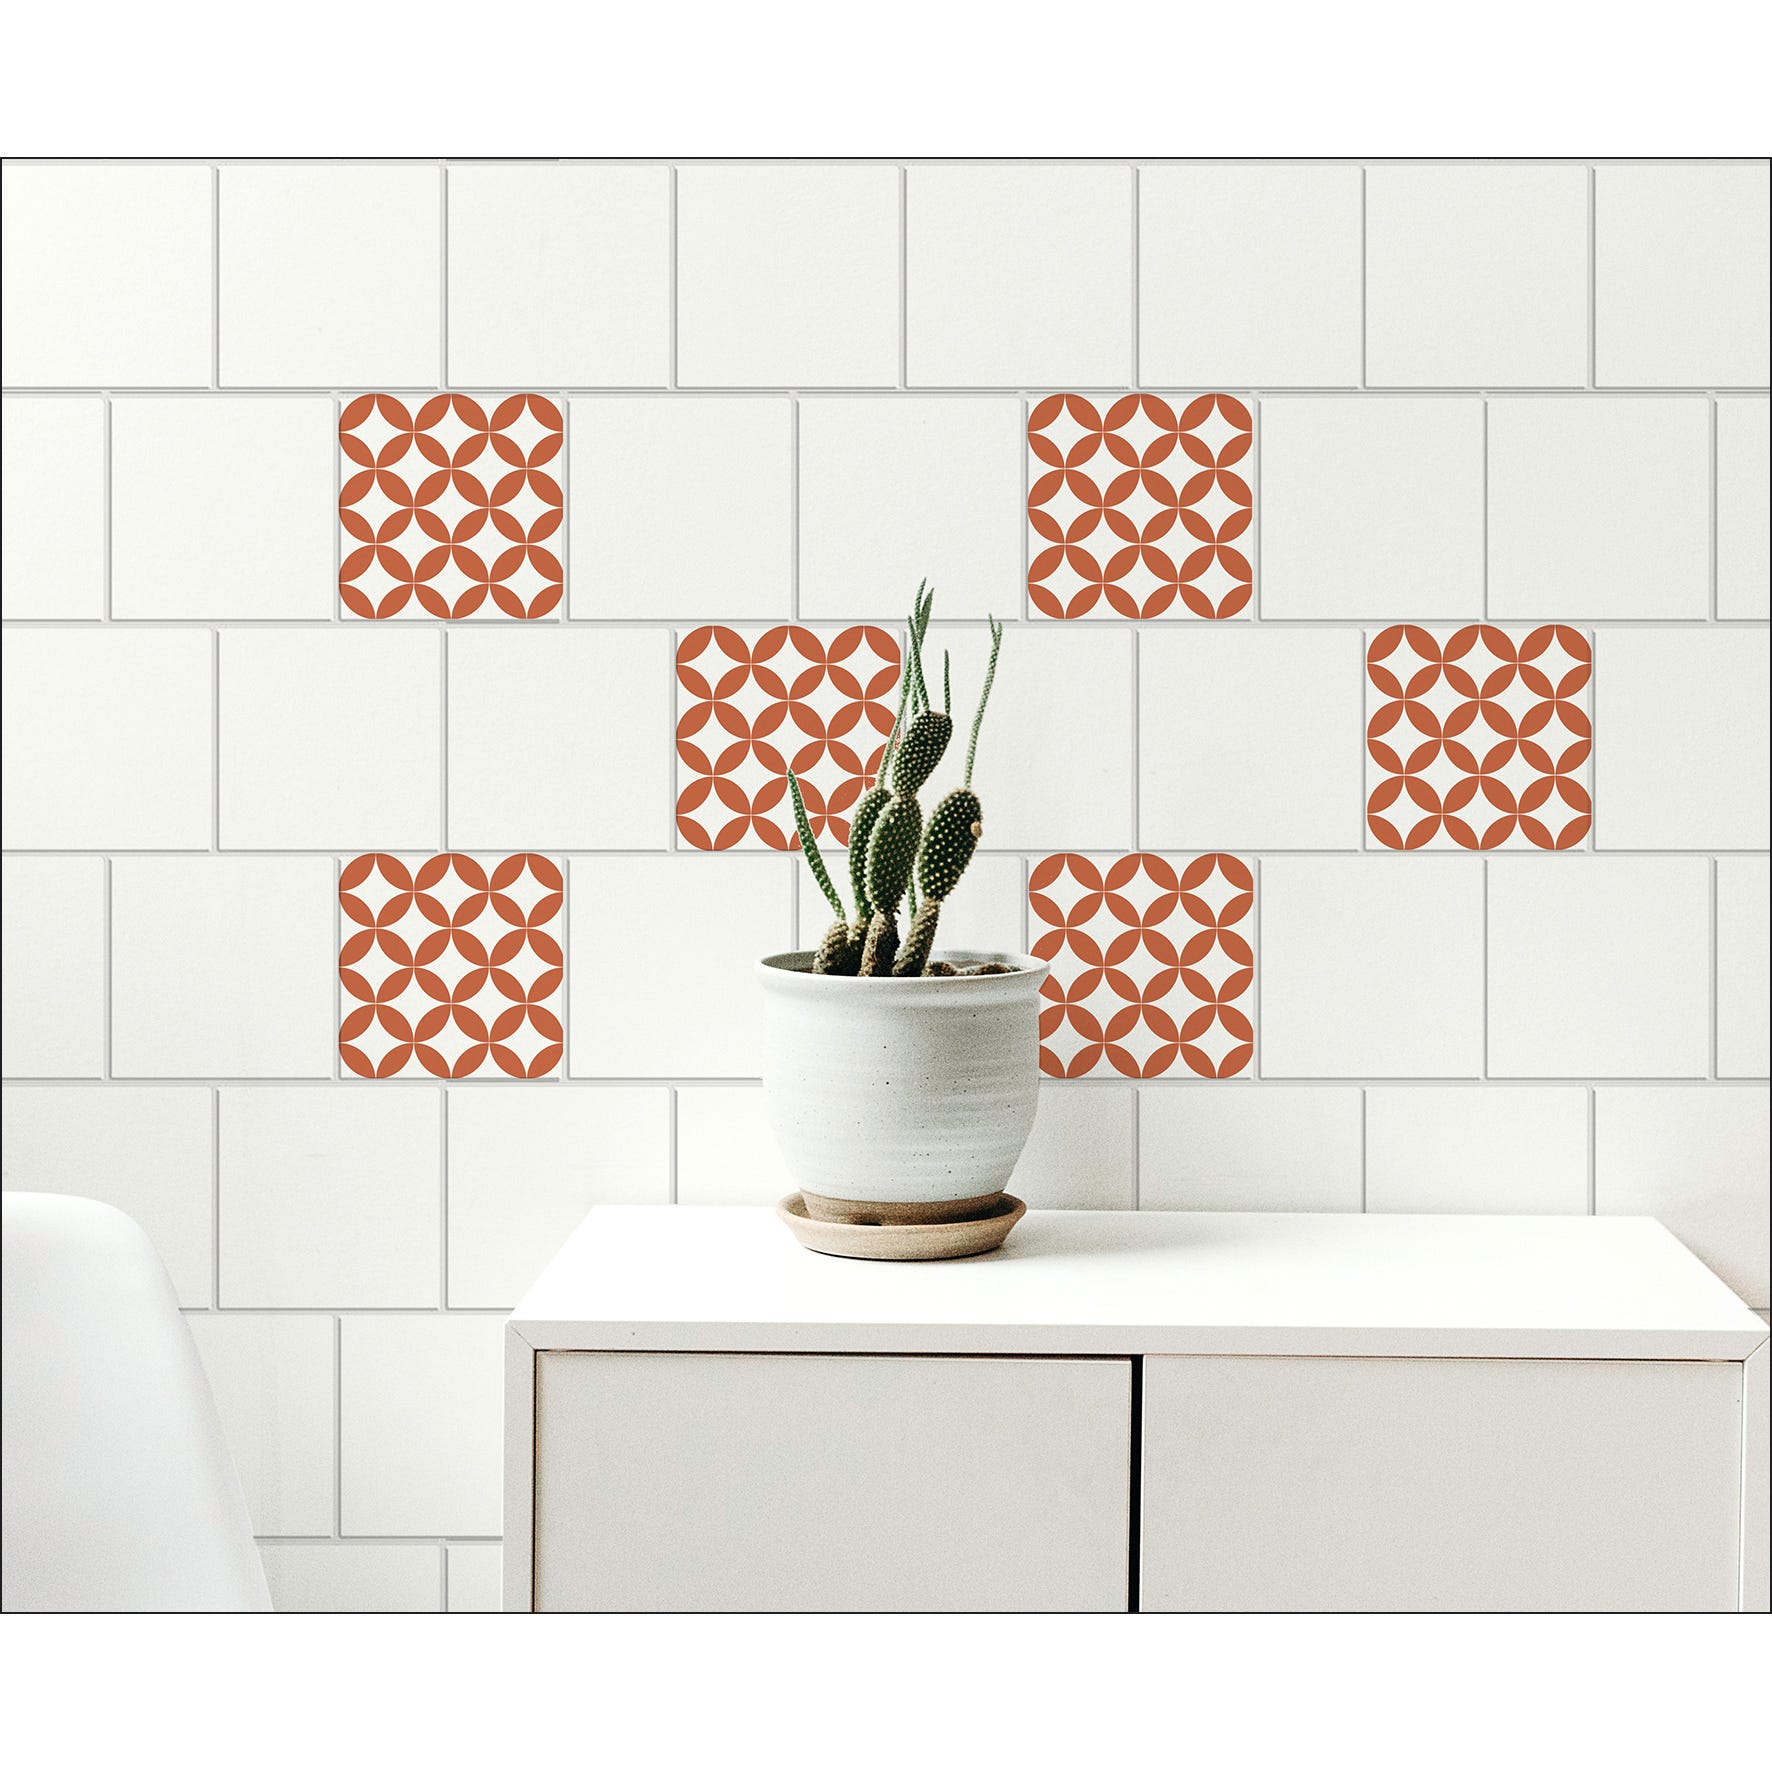 Sticker carrelage adhésif décoratif autocollant, carreaux style céramique,  ronds orange losanges blancs, x6, 15 cm X 15 cm